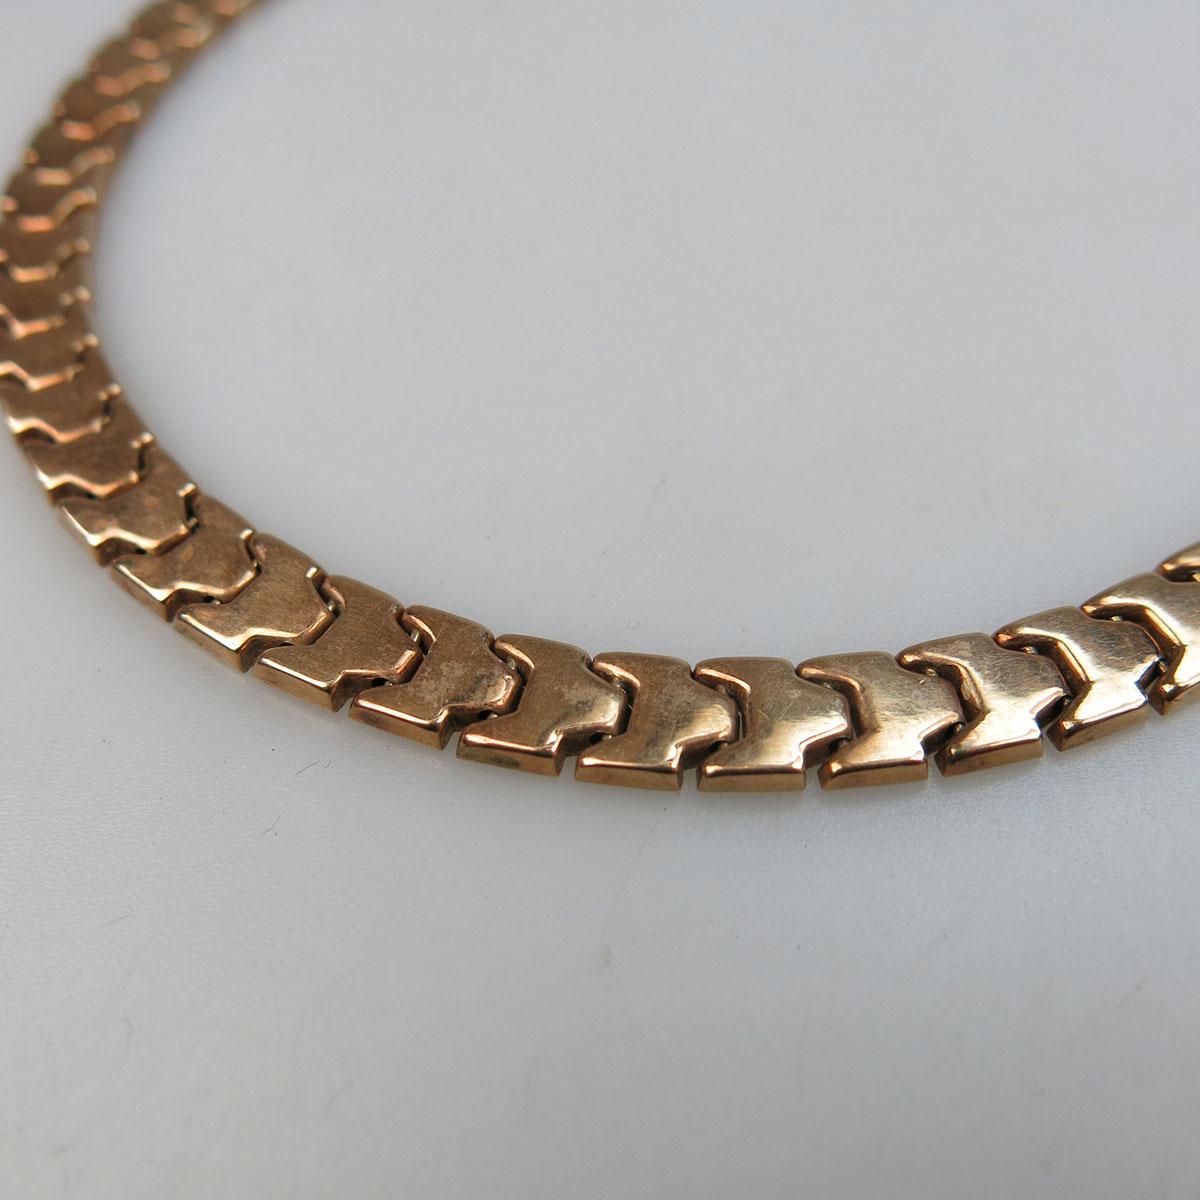 14k Rose Gold Link Necklace